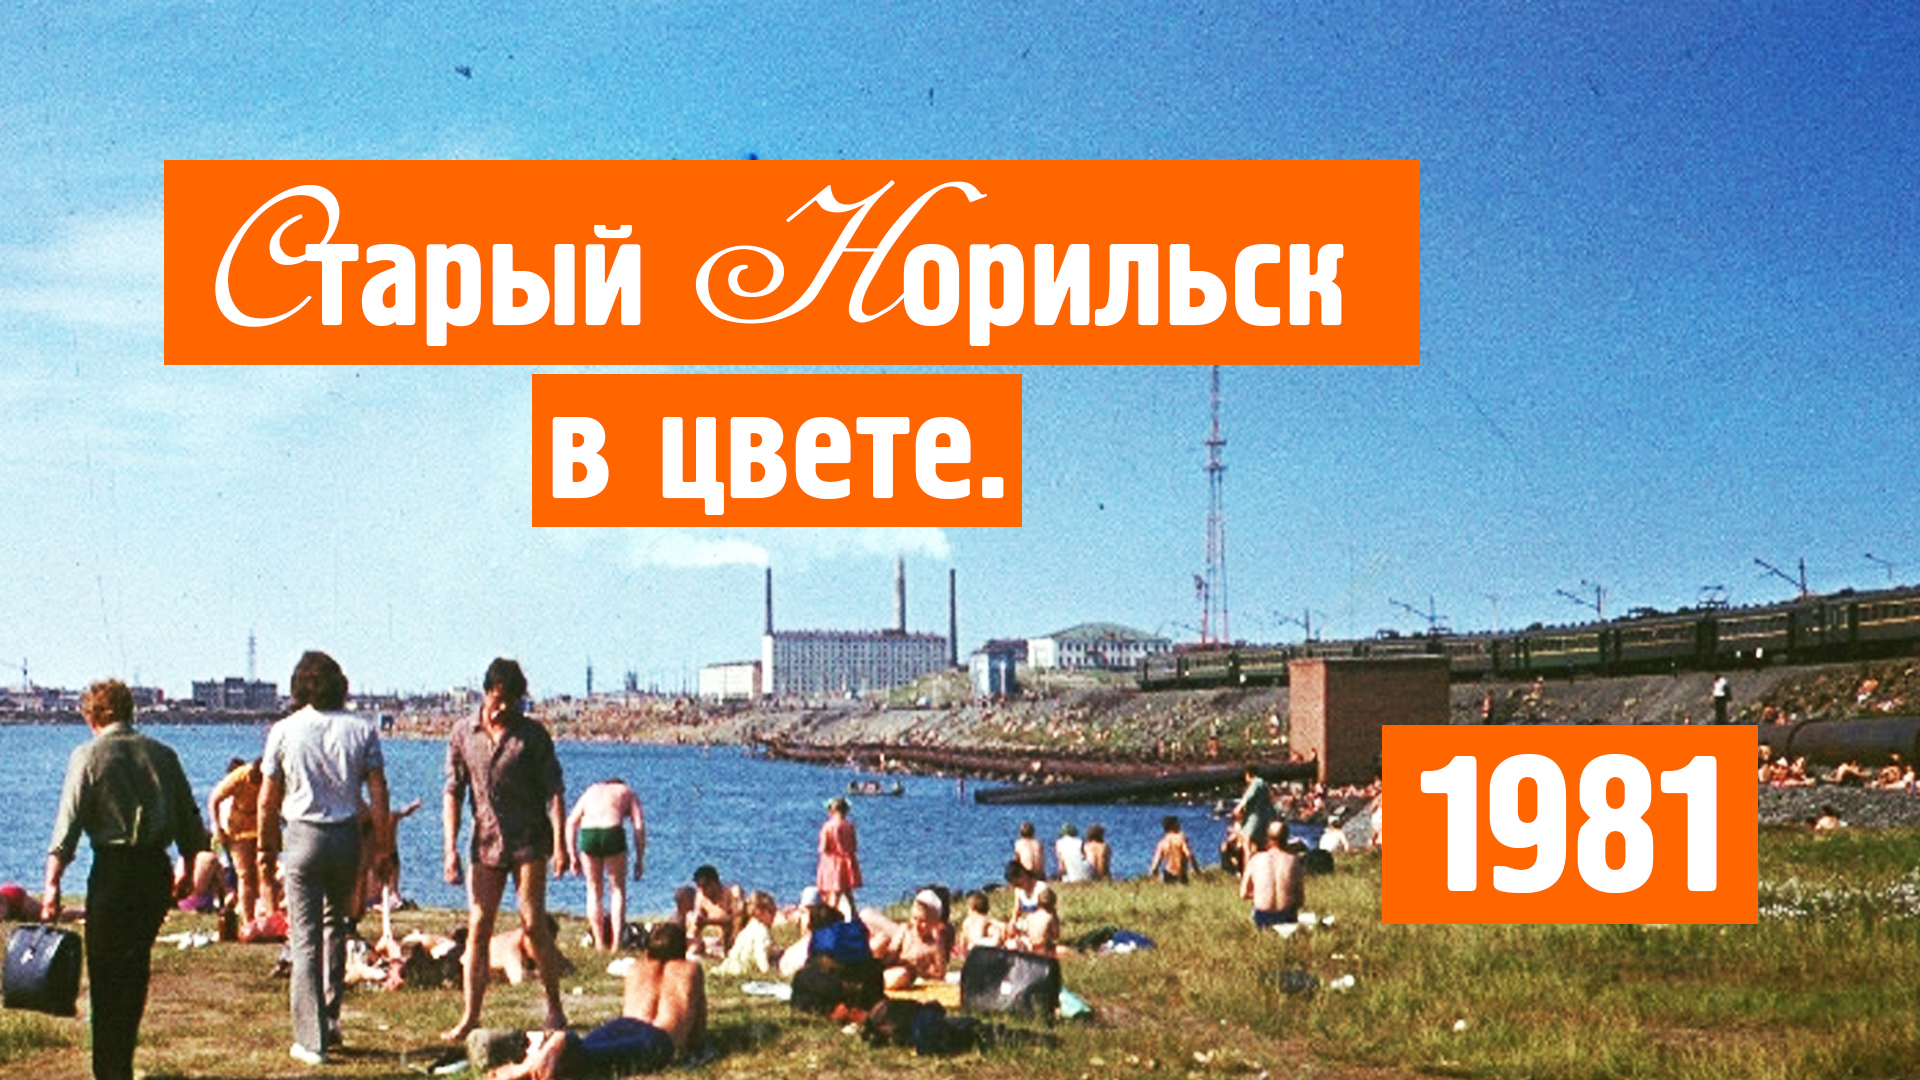 Старый Норильск / Цветные фото / Хроника / 1981 / Норильск блог